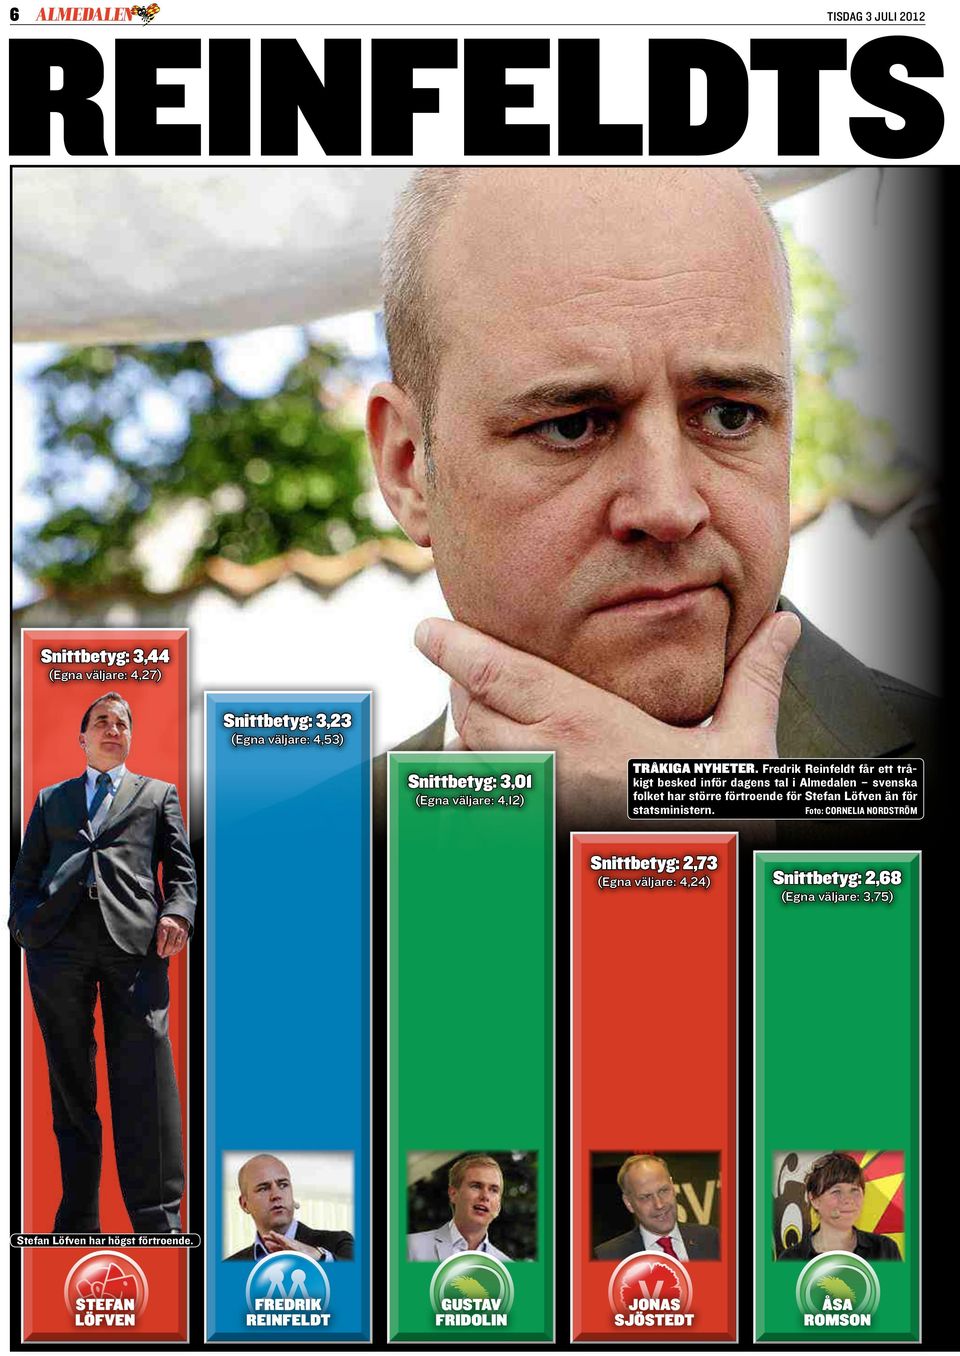 Fredrik Reinfeldt får ett trå- kigt besked inför dagens tal i Almedalen svenska folket har större förtroende för Stefan Löfven än